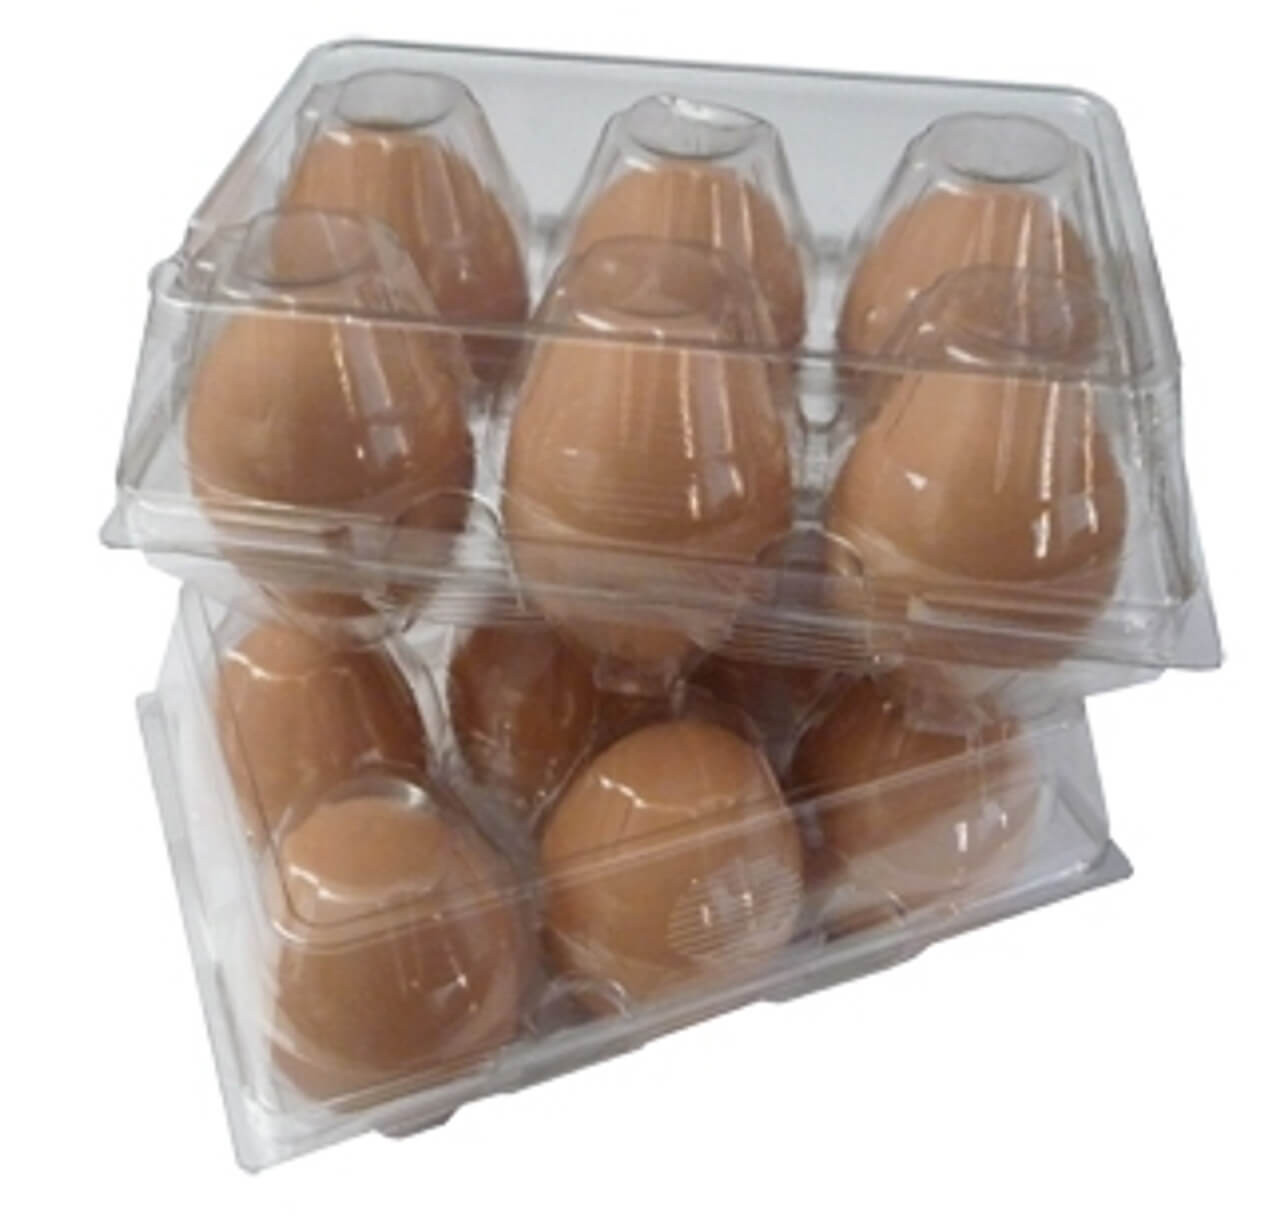 FVIEXE 100PCS Egg Cartons Cheap Bulk, Clear Egg Carton for Half Dozen  Chicken Eggs (6 Eggs), Plastic Egg Carton Bulk Egg Storage Containers  Holder Egg